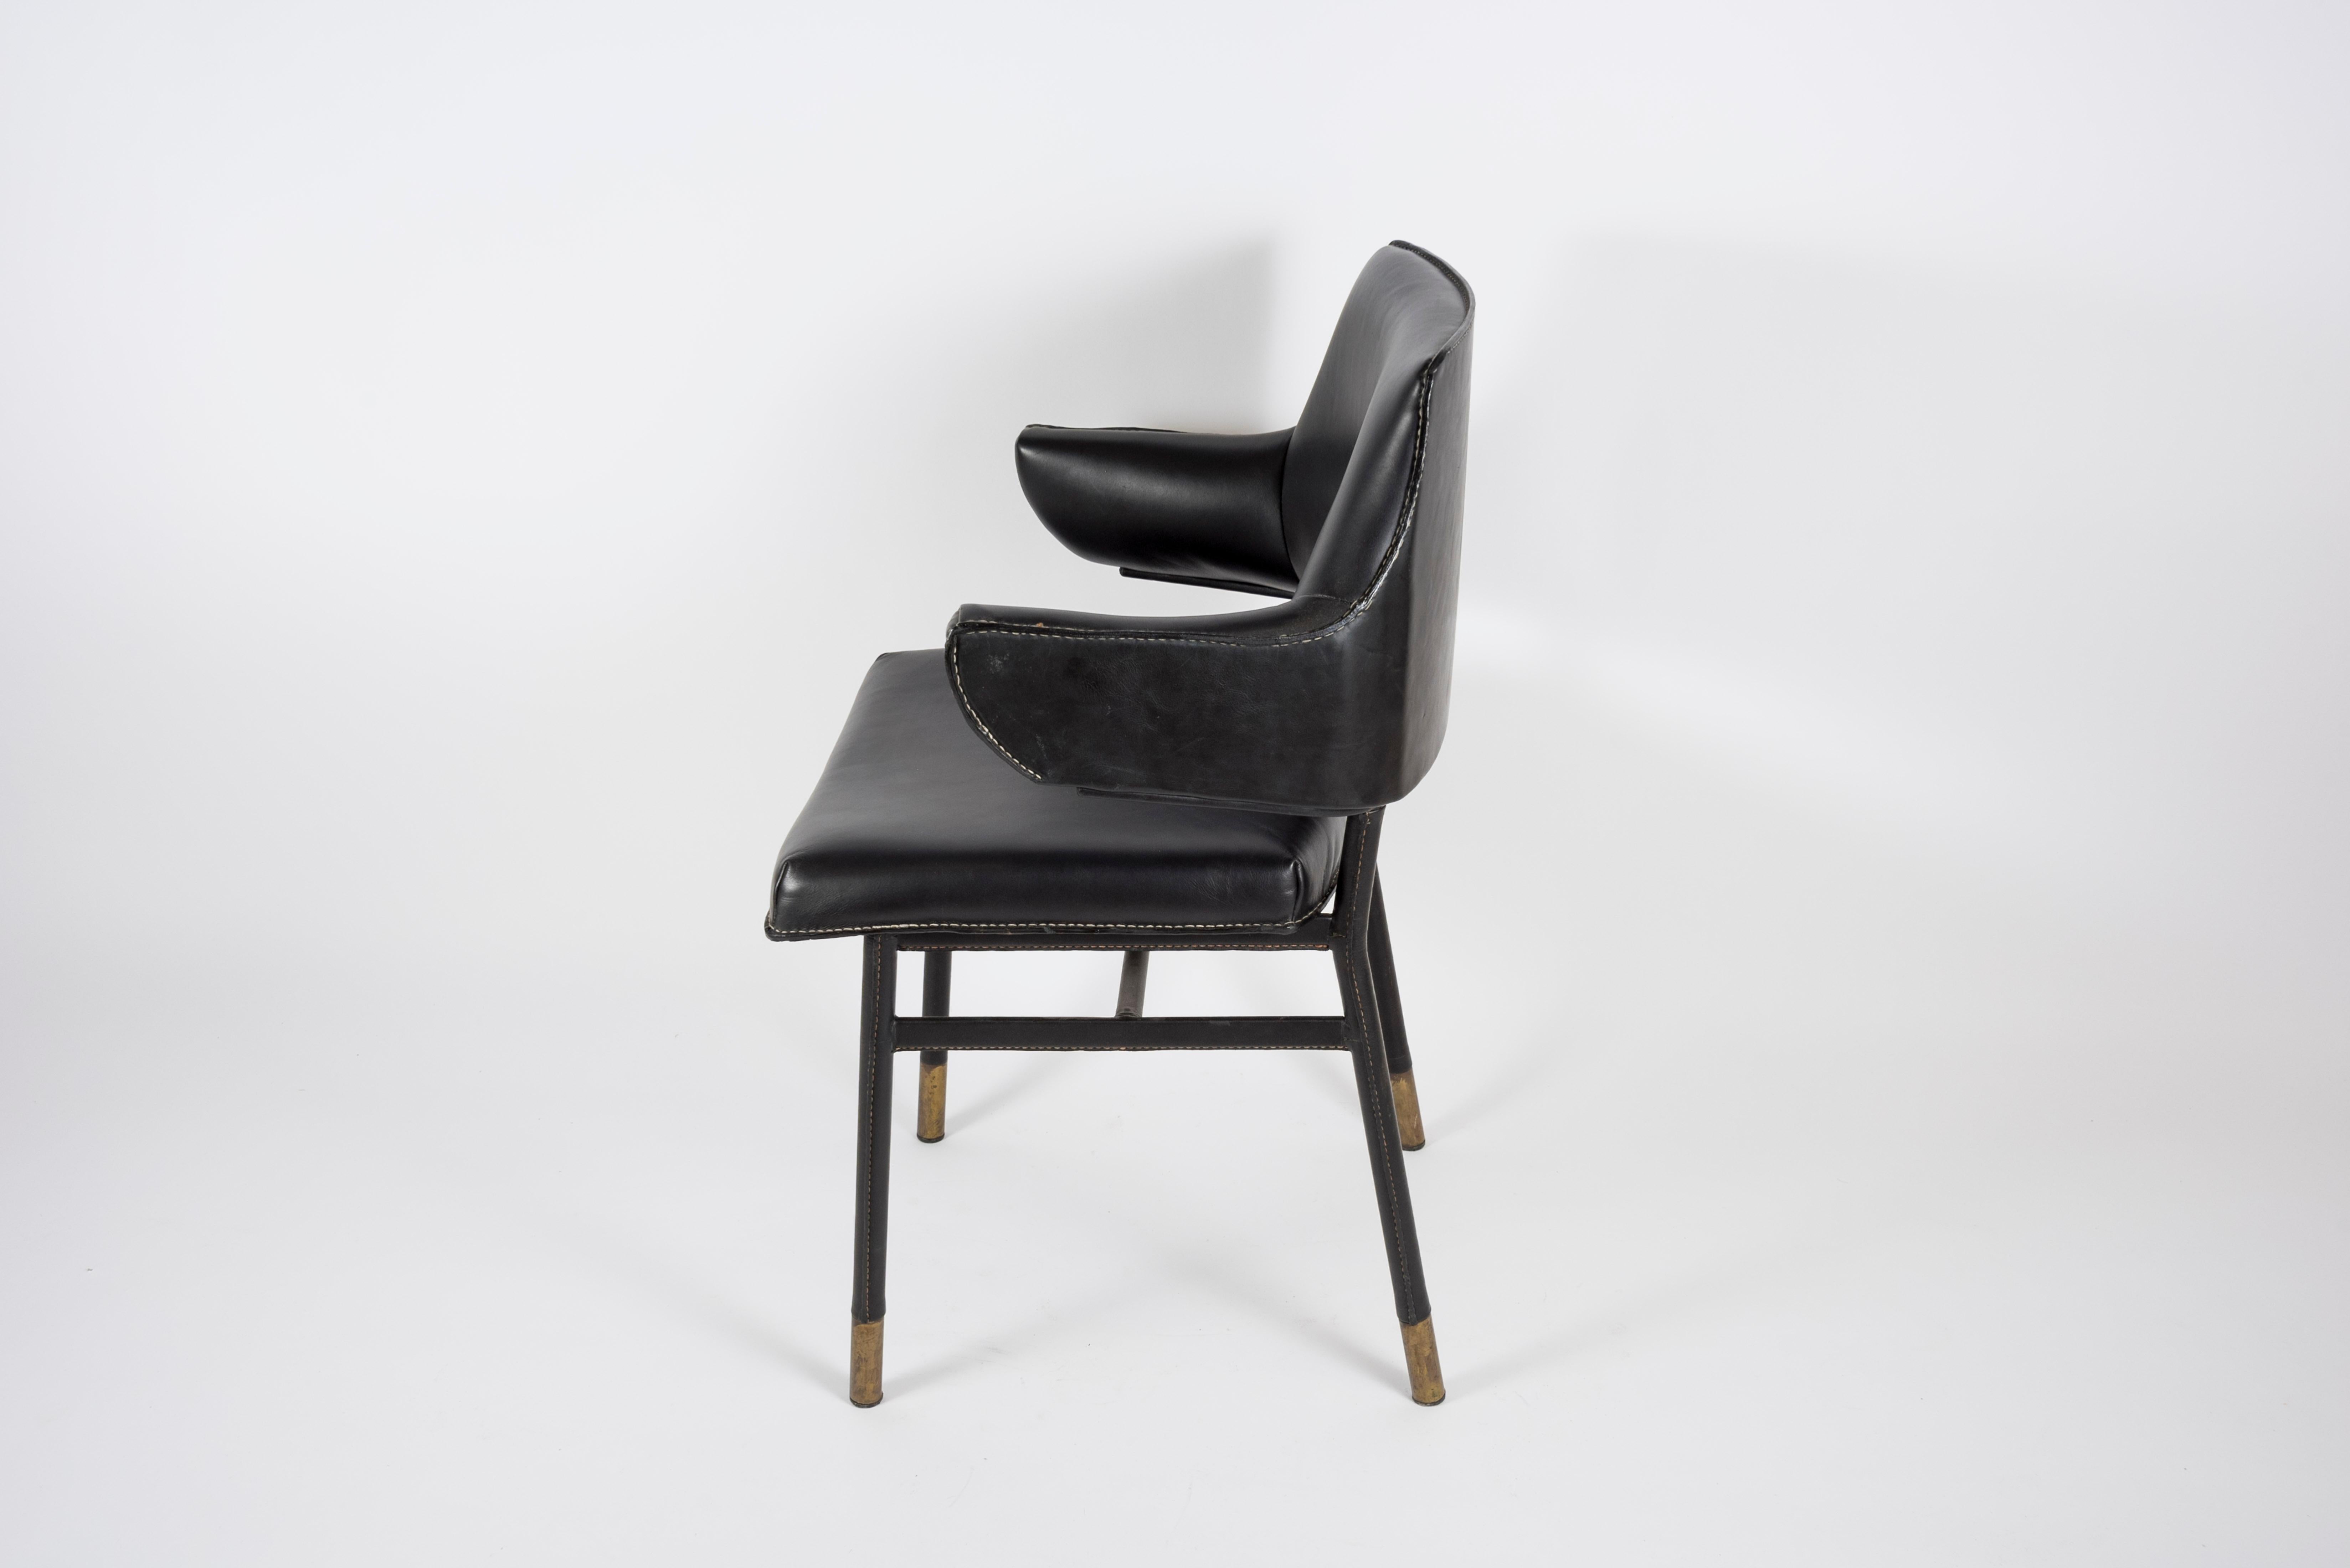 fauteuil en cuir surpiqué des années 1950 par Jacques Adnet
France.